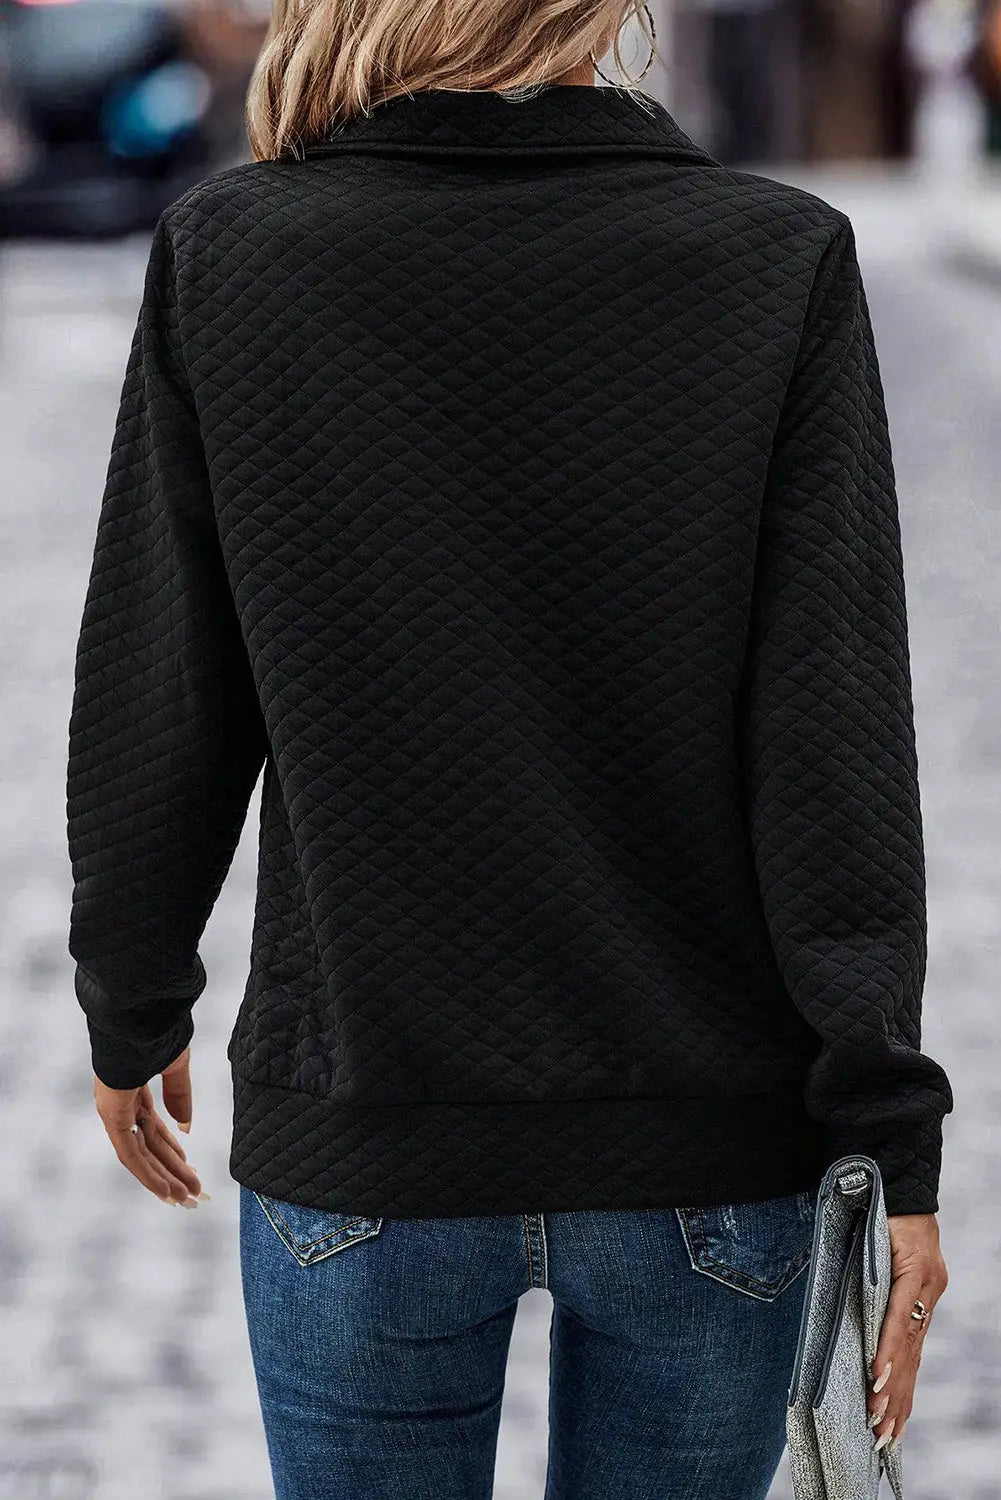 Black solid half zipper quilted pullover sweatshirt - sweatshits & hoodies